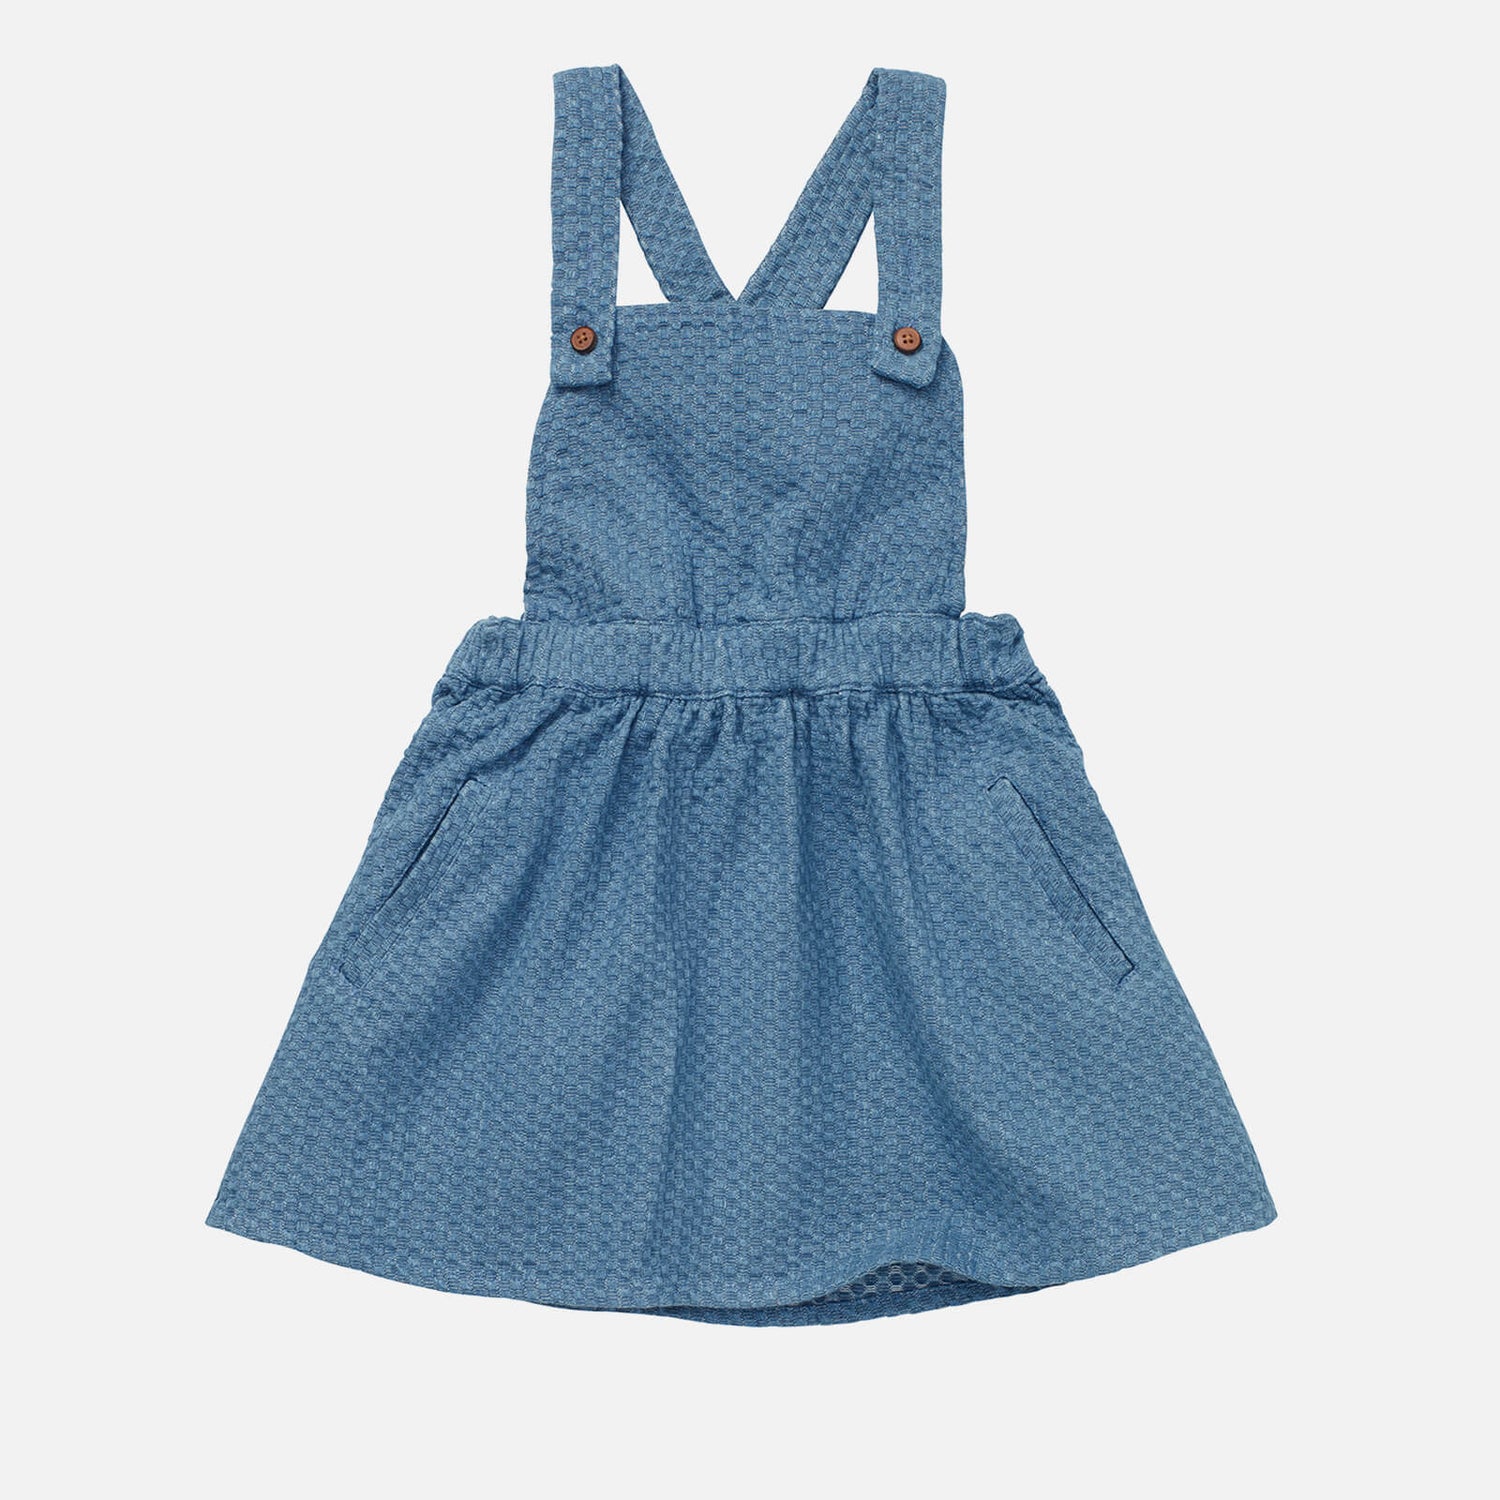 Sproet + Sprout Kids' Denim Salopette Dress - Denim Blue - 18 Months